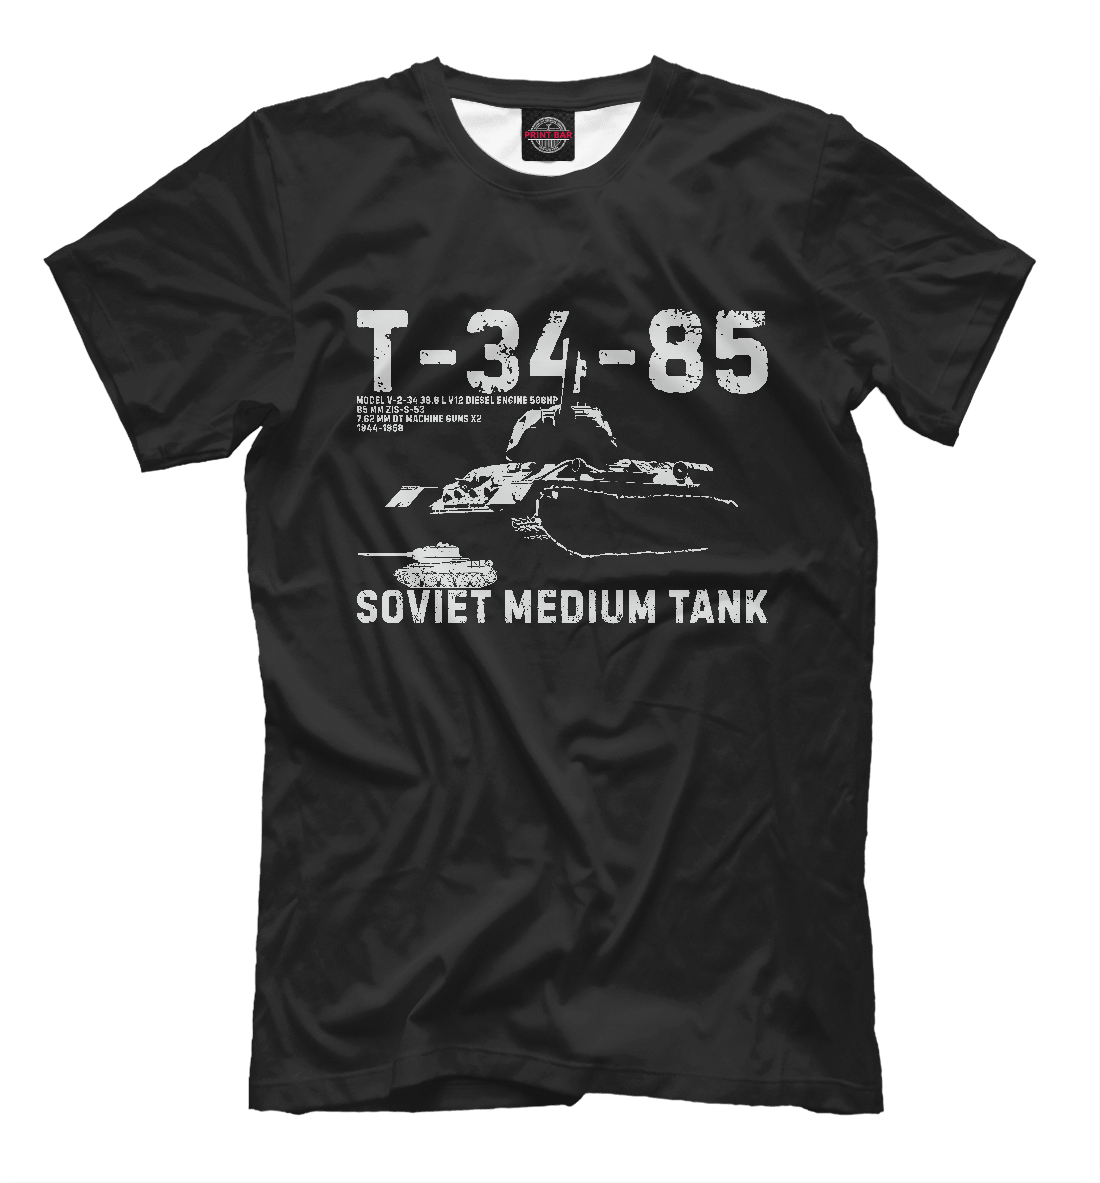 Футболка Т-34-85 советский танк для мальчиков, артикул: TNK-419312-fut-2mp